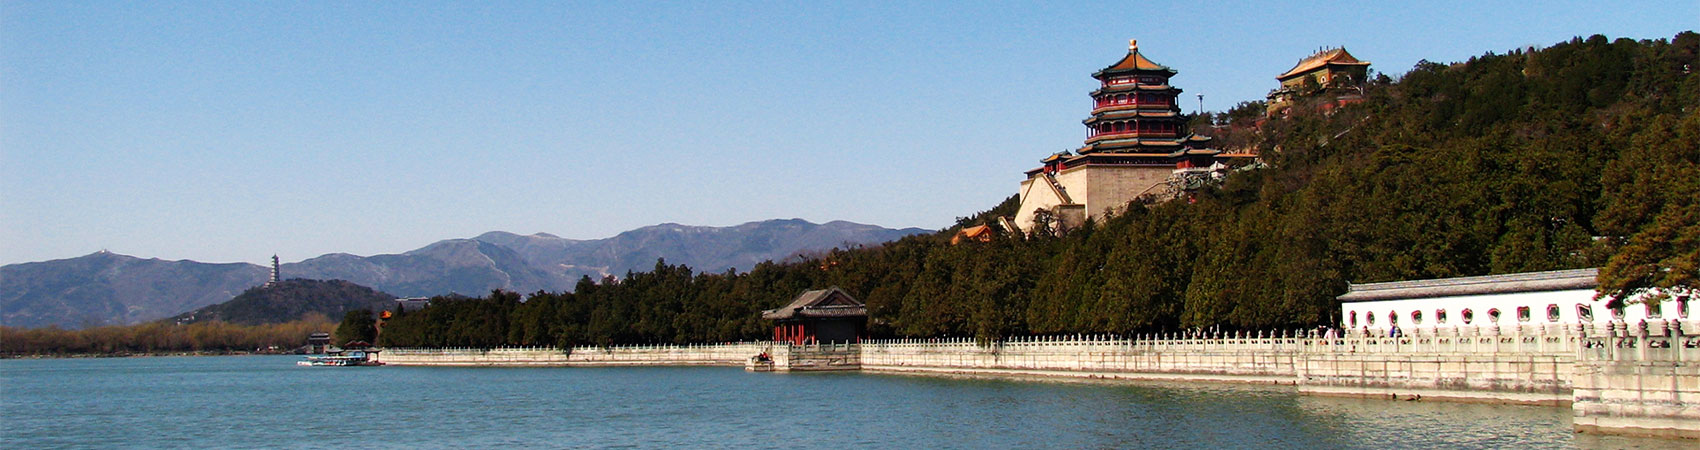 China-Reise nach Peking: Summer Palace